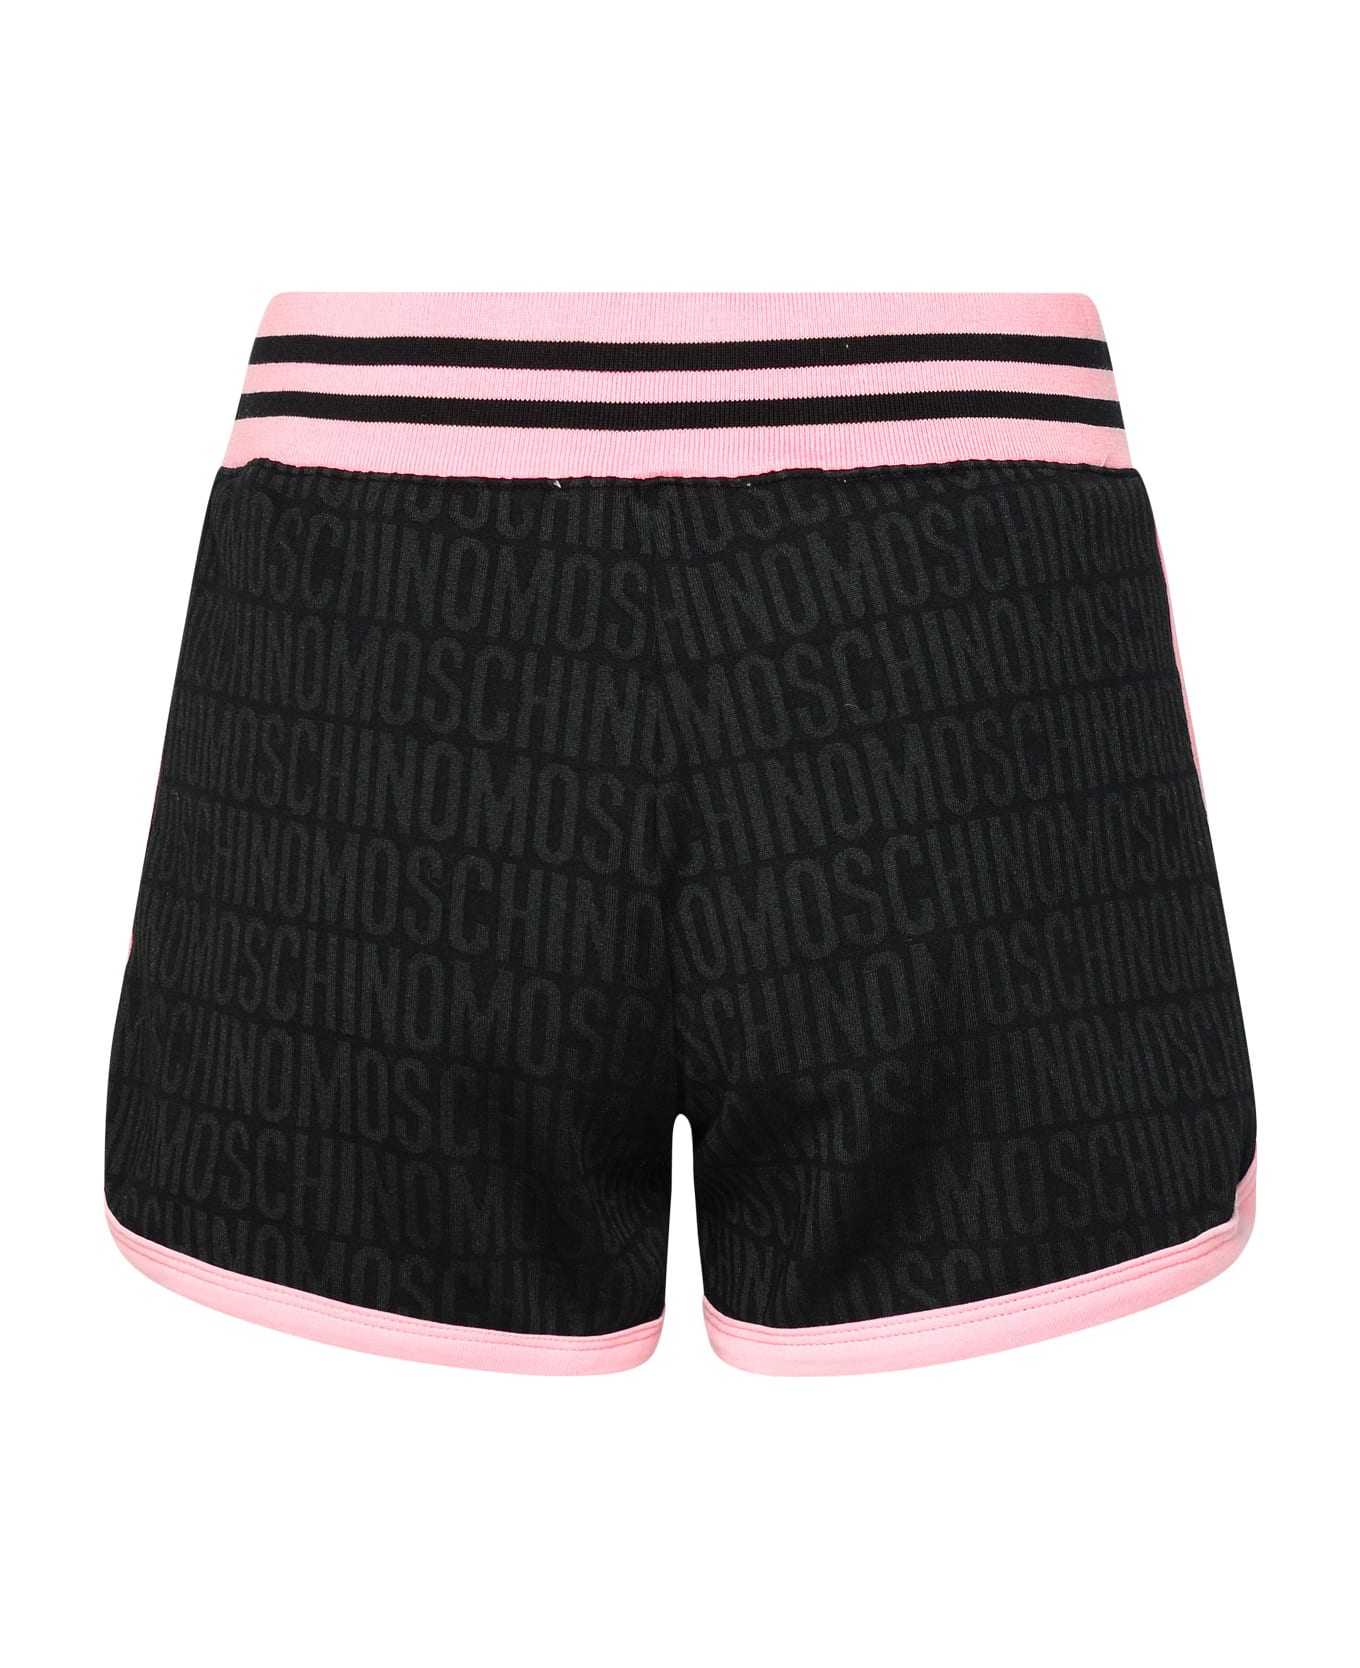 Moschino Black Cotton Blend Shorts - Black